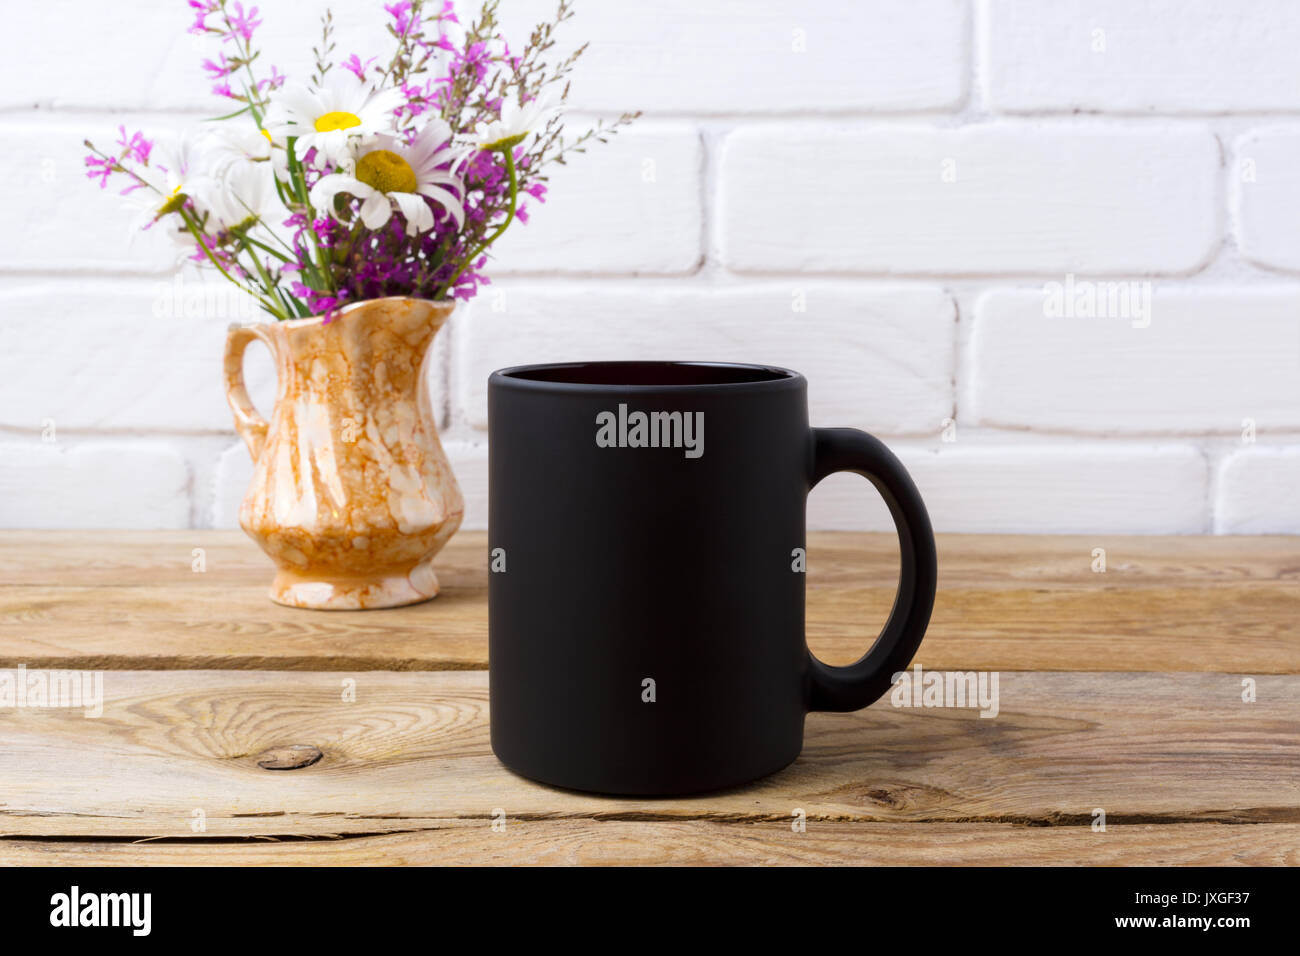 Nero caffè mug mockup con il bianco camomilla e viola e fiori di campo in golden brocca vaso. Boccale vuoto mock up per la promozione del brand. Foto Stock